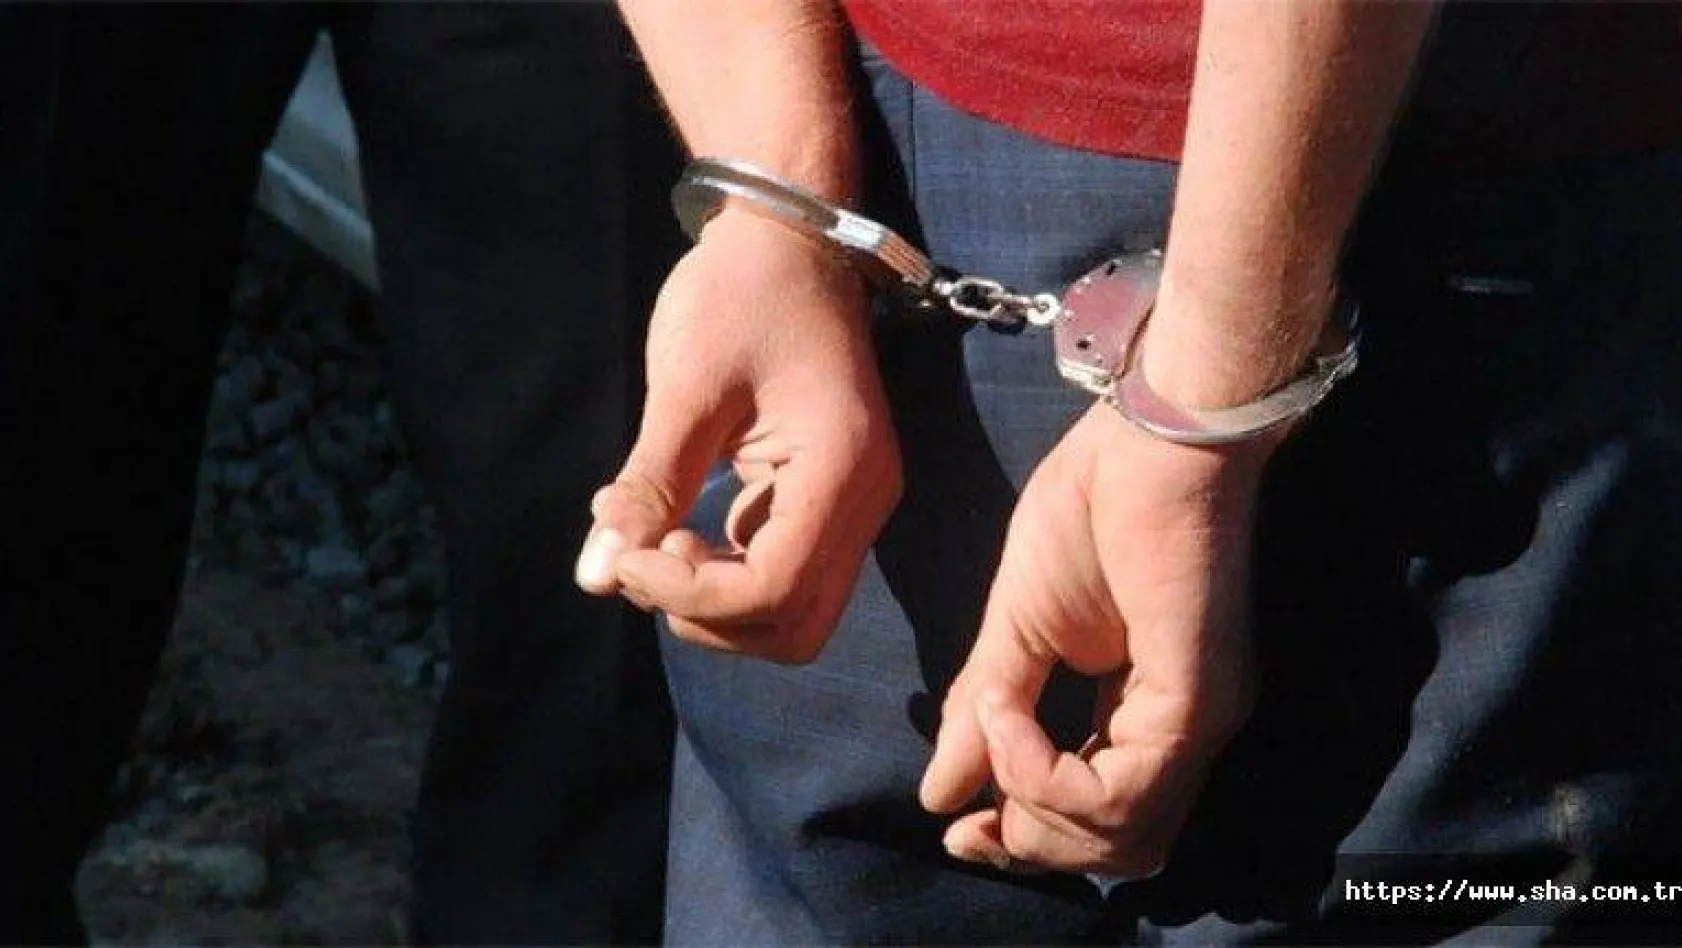 Türkiye'yi ayağa kaldıran görüntü ile ilgili 1 kişi gözaltına alındı